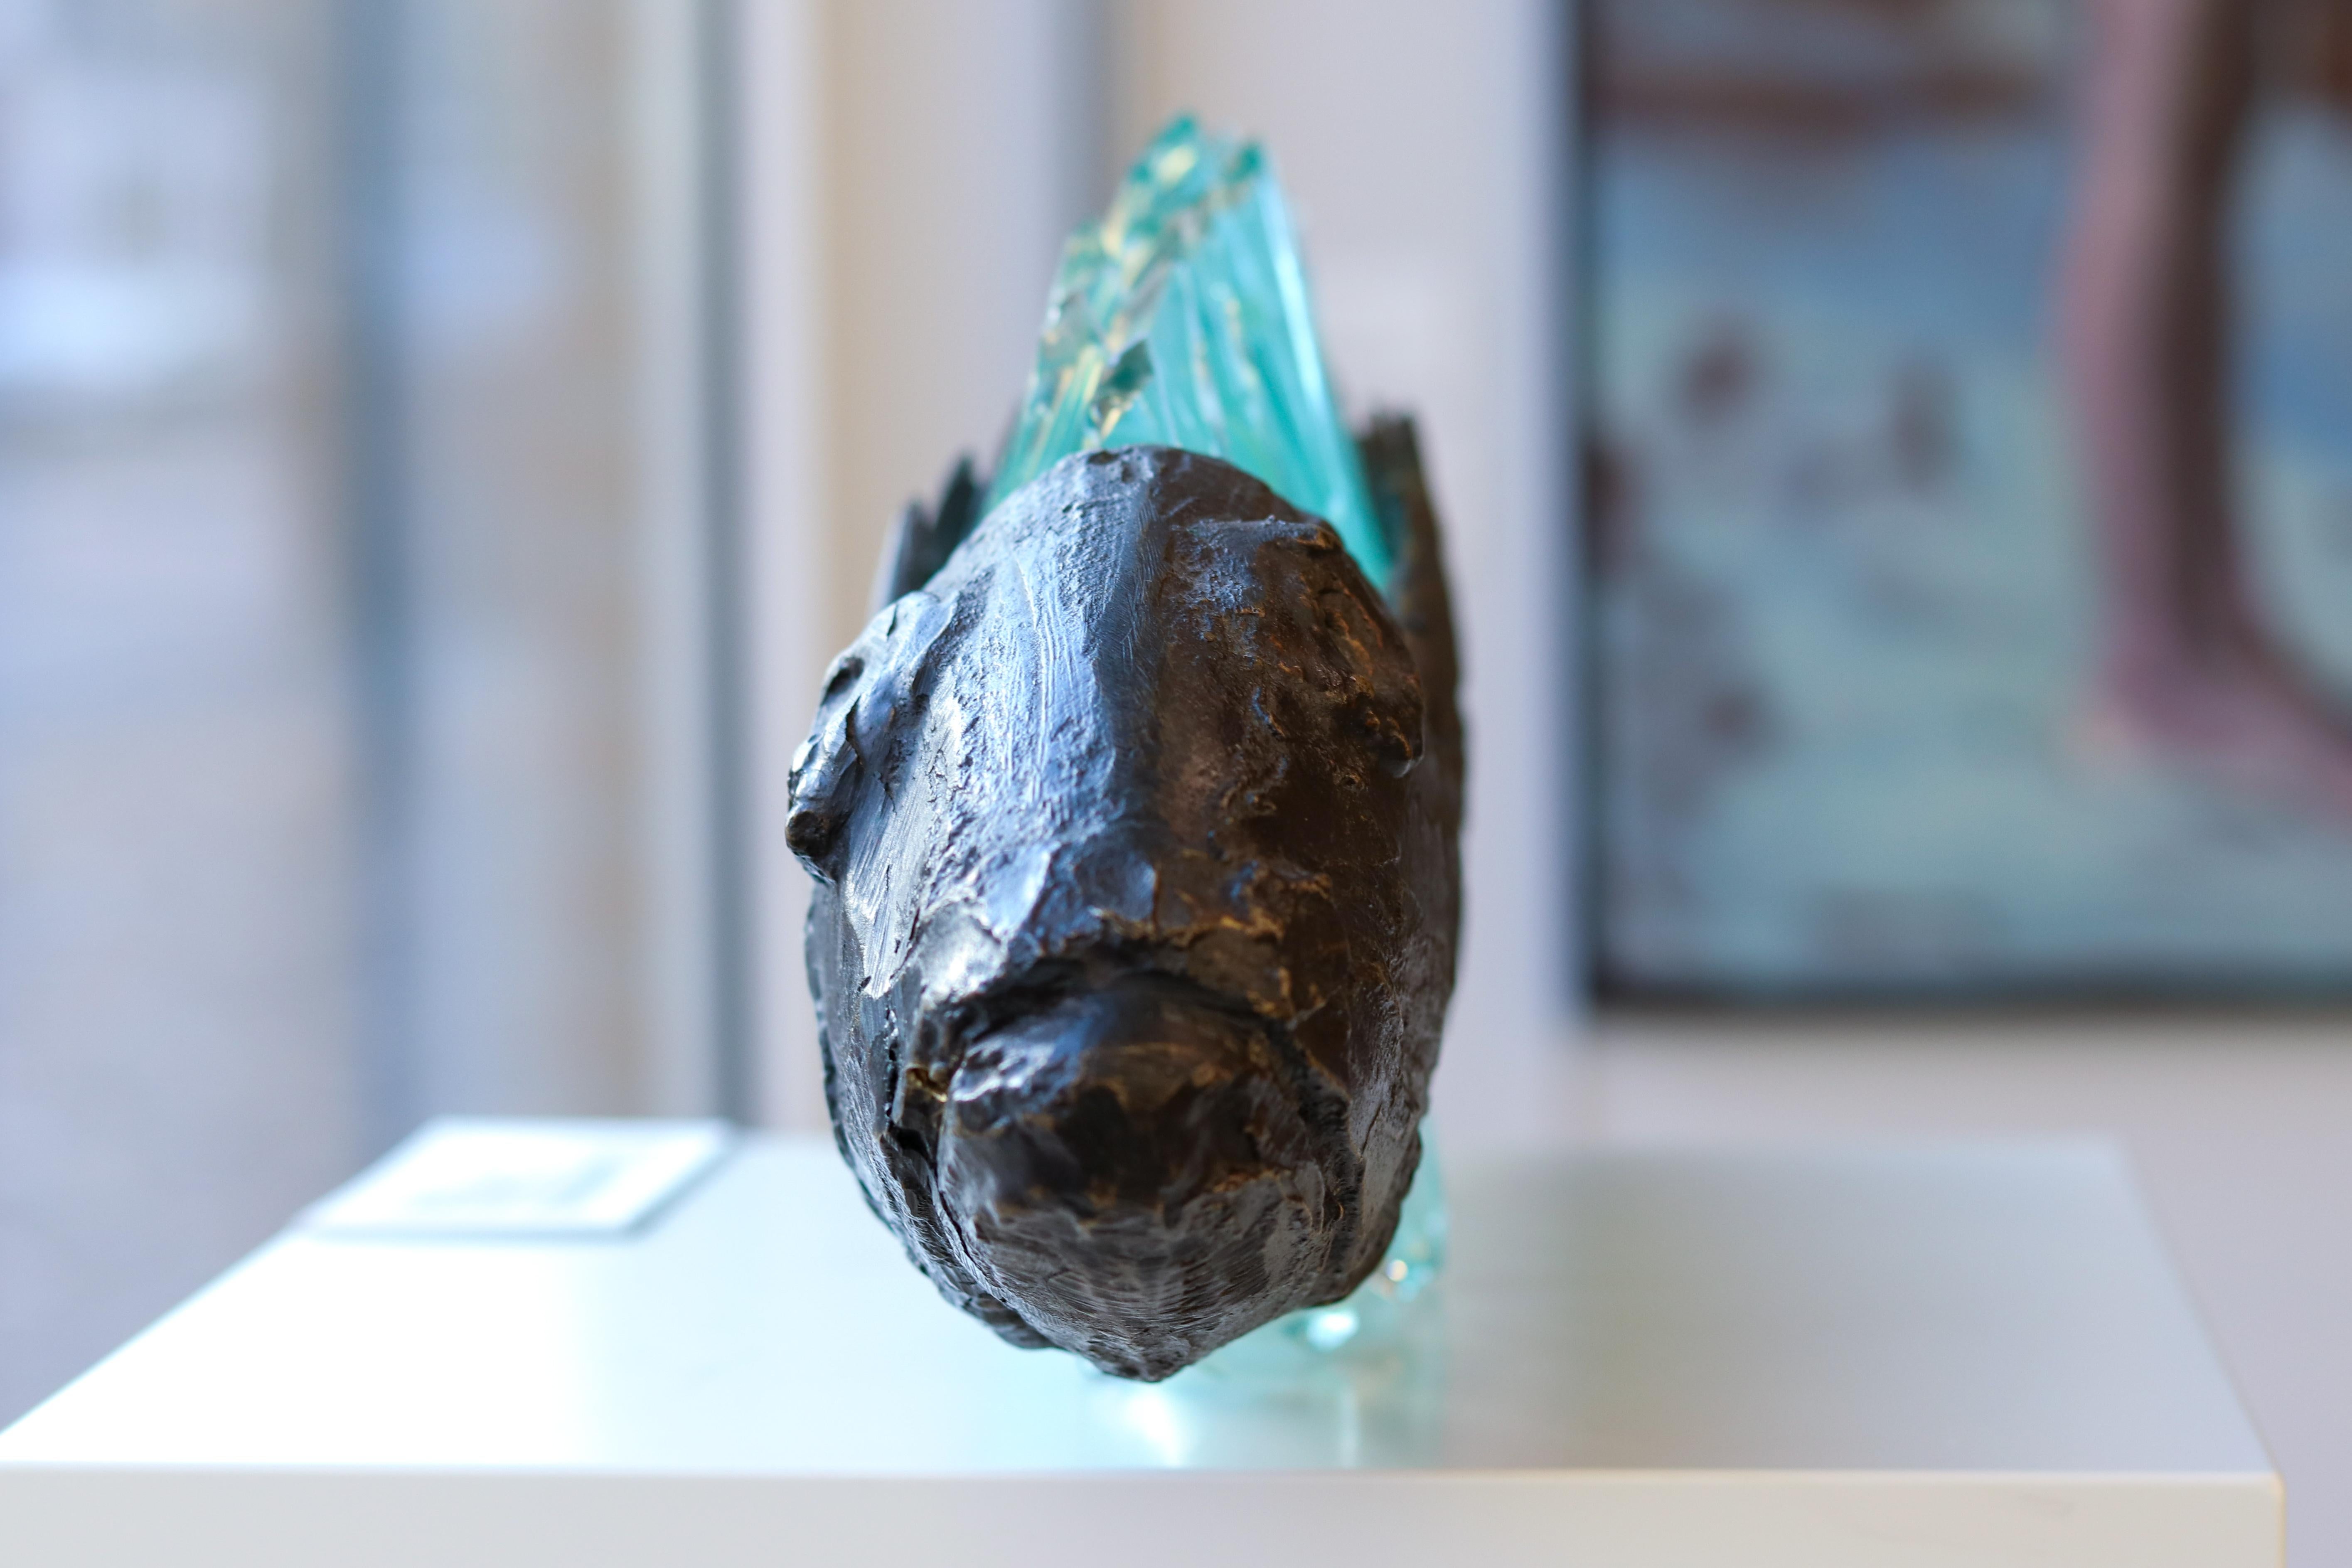 Entrapped fish - Barracuda, 21st Century Contemporary Sculpture by Yrgos Kypris 10